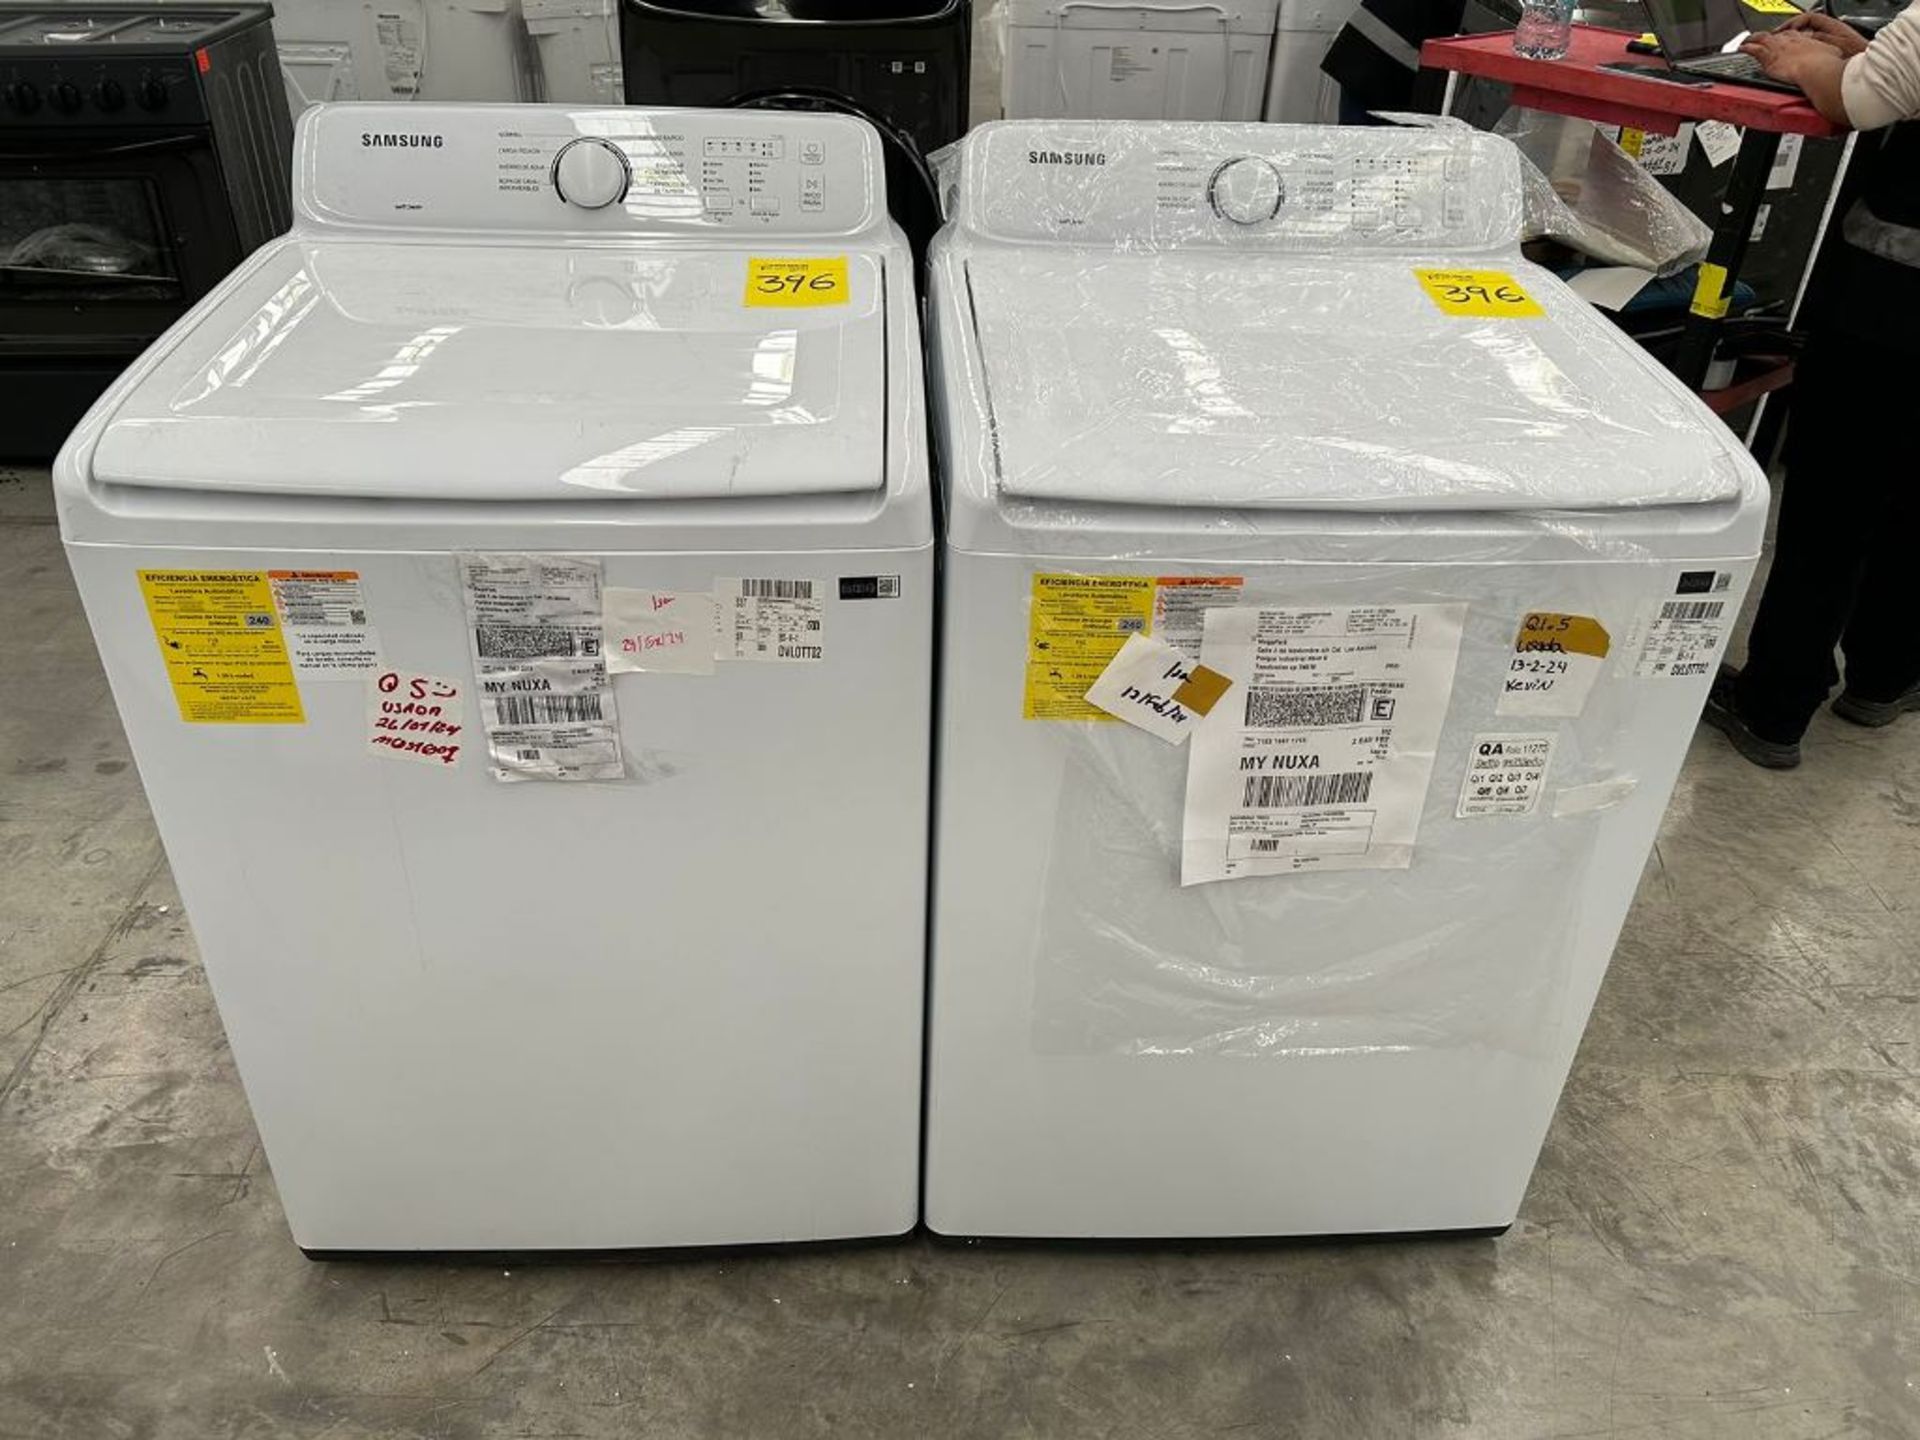 Lote de 2 Lavadoras contiene: 1 lavadora de 20 Kg Marca SAMSUNG, Modelo WA20A3351GW, Serie 00256R,